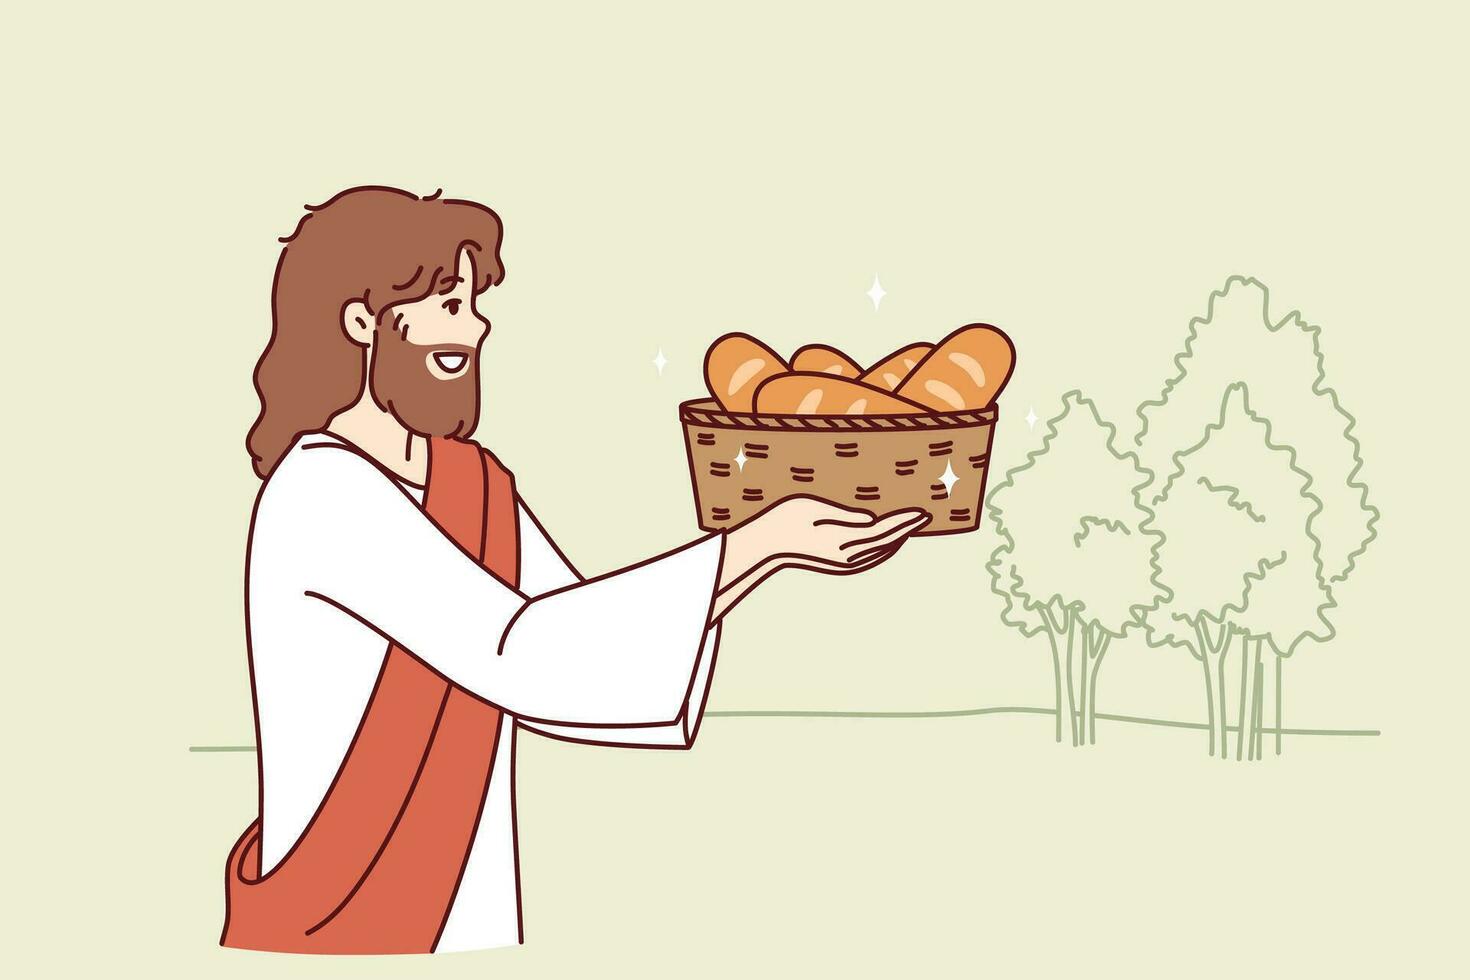 Jésus porte pain dans panier, épanouissant biblique prédiction de Christian religion vecteur